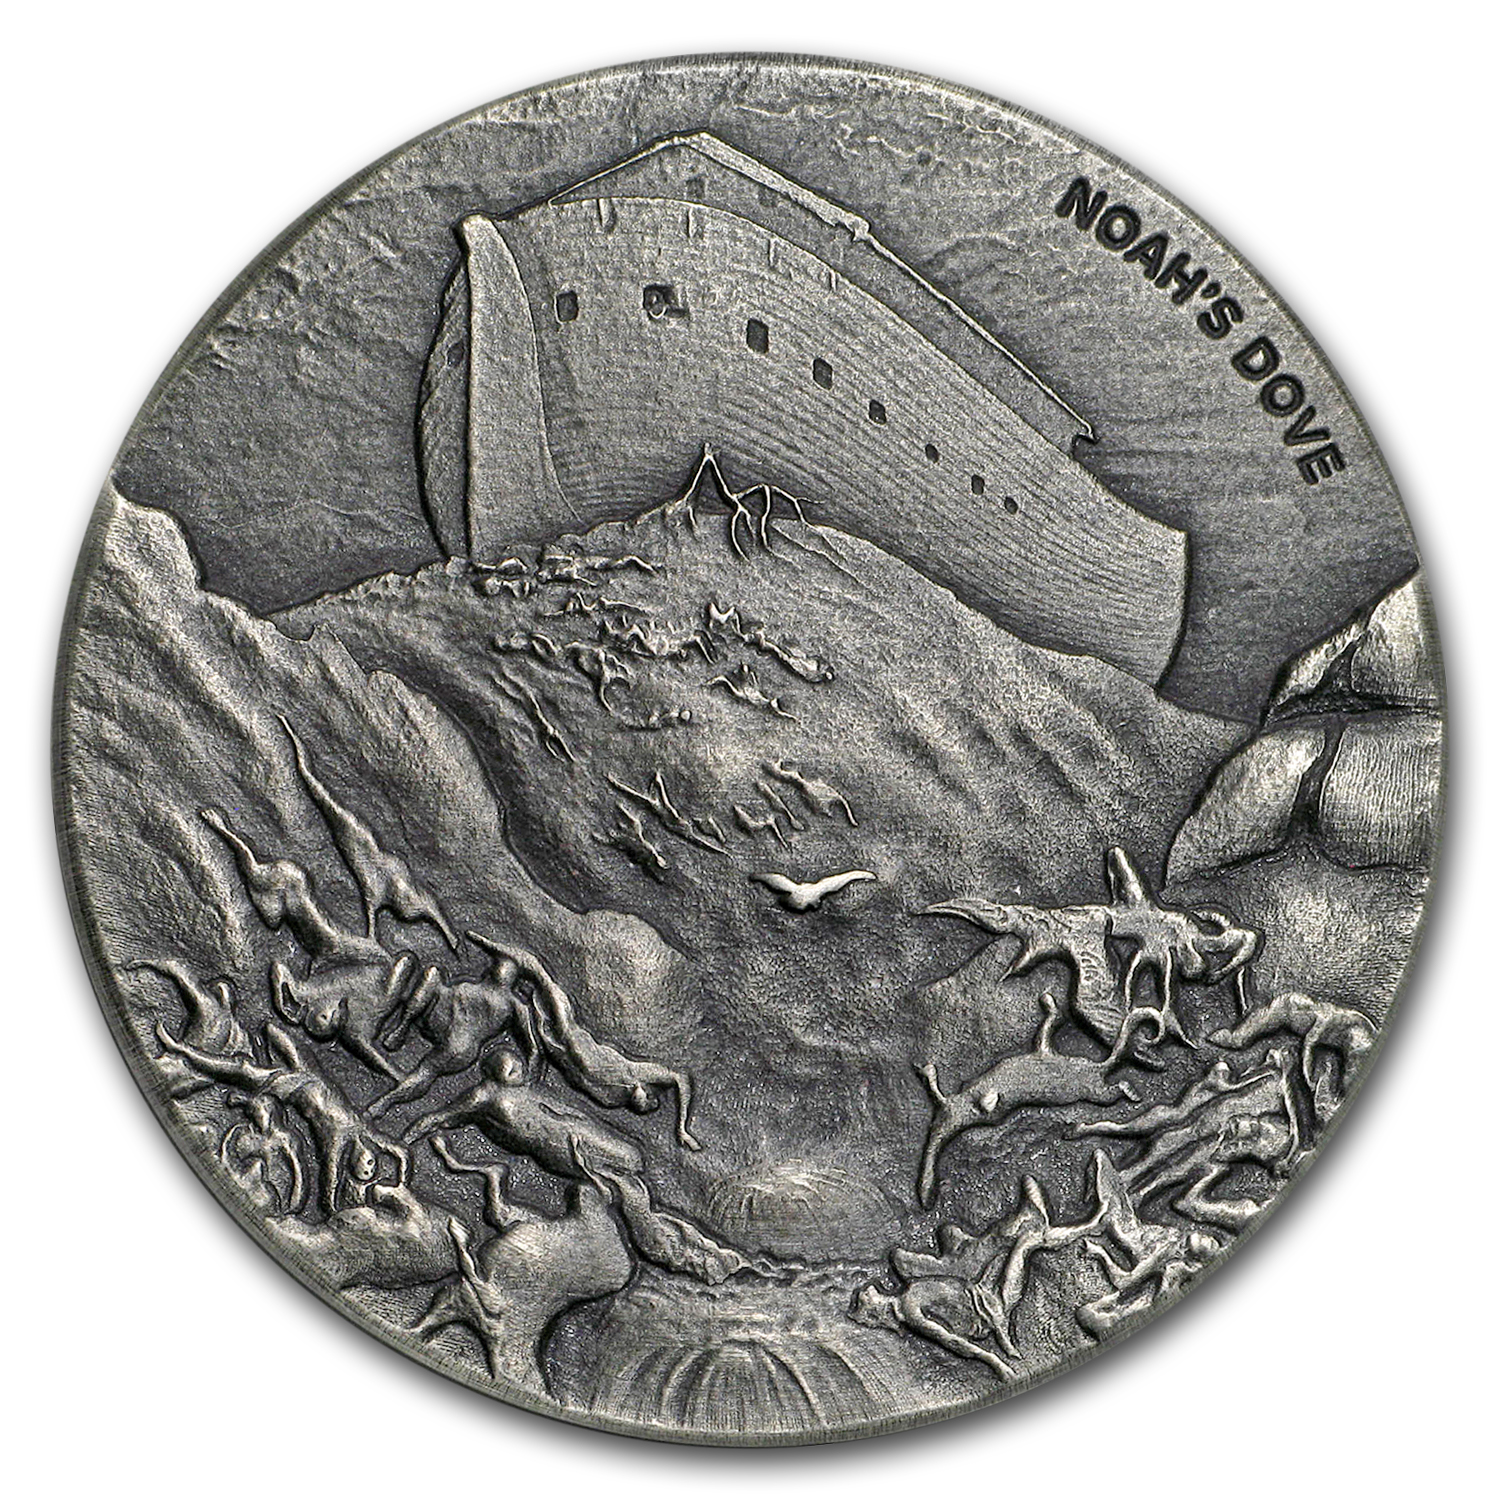 Buy 2018 2 oz Silver Coin - Biblical Series (Noah's Dove) - Click Image to Close